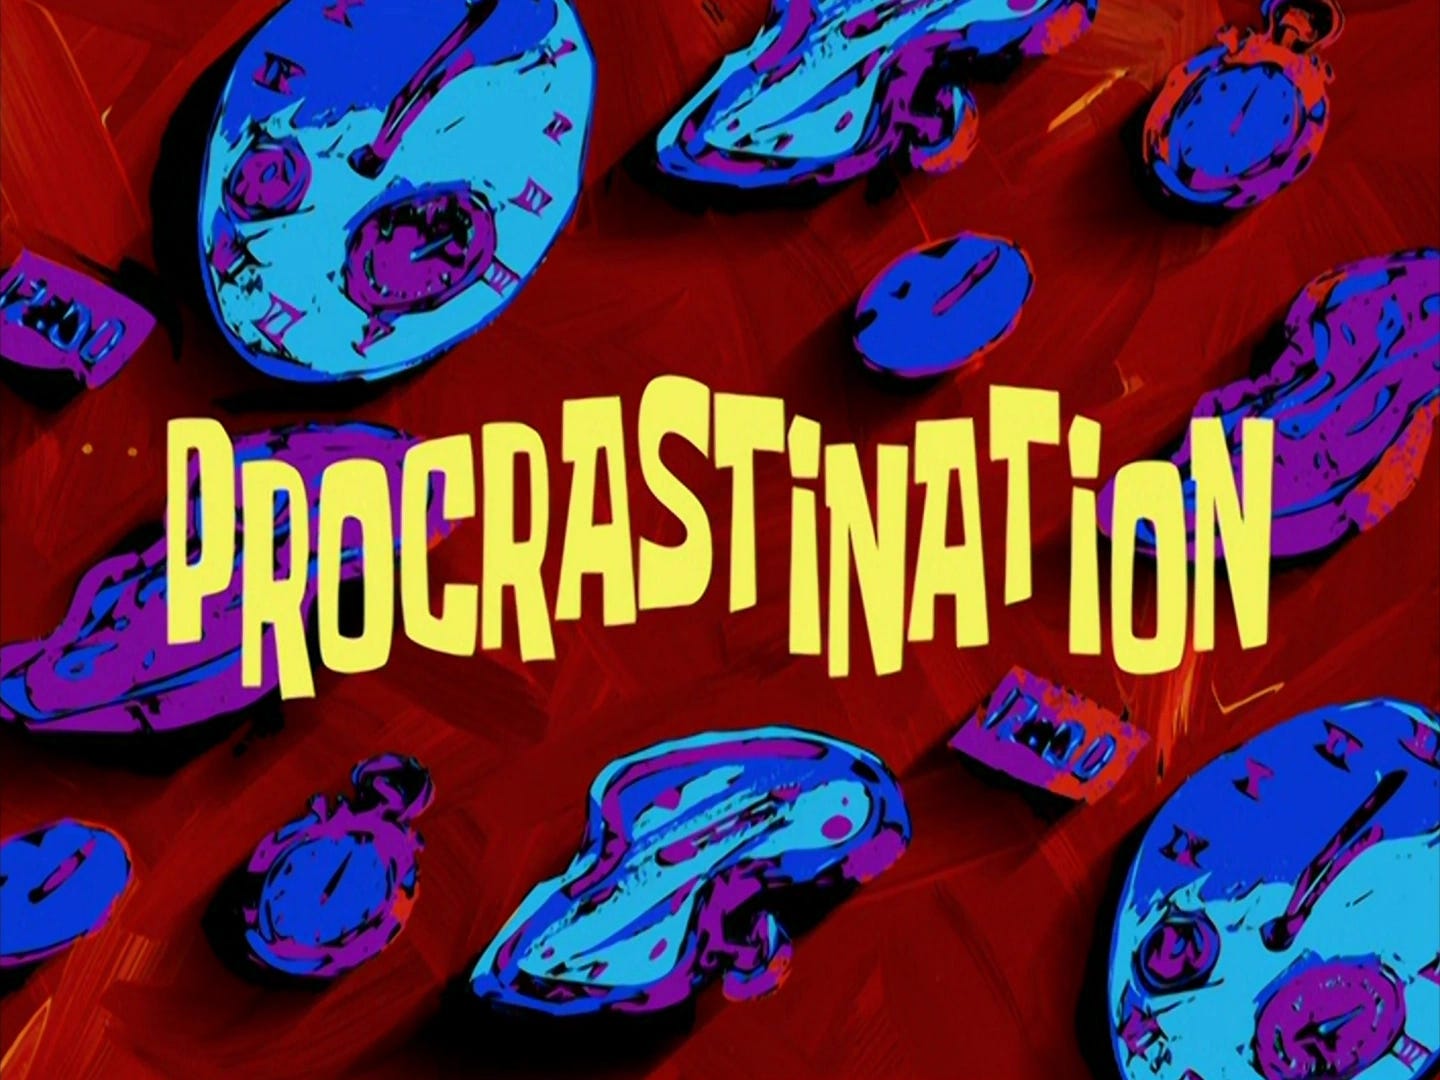 A SpongeBob SquarePants episode title card that reads "Procrastination."